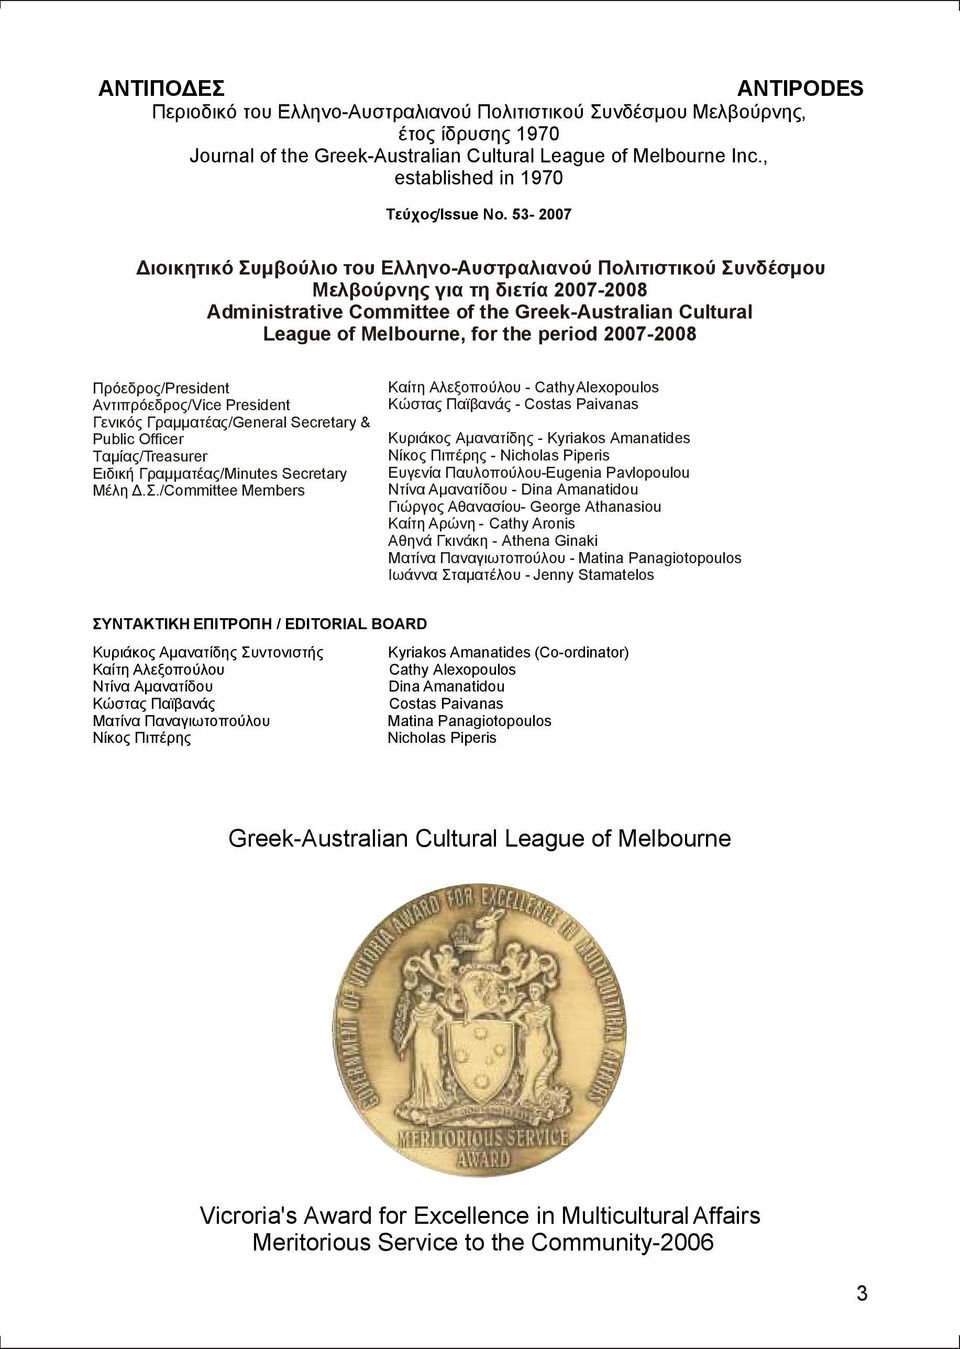 53-2007 ιοικητικό Συµβούλιο του Ελληνο-Αυστραλιανού Πολιτιστικού Συνδέσµου Μελβούρνης για τη διετία 2007-2008 Administrative Committee of the Greek-Australian Cultural League of Melbourne, for the